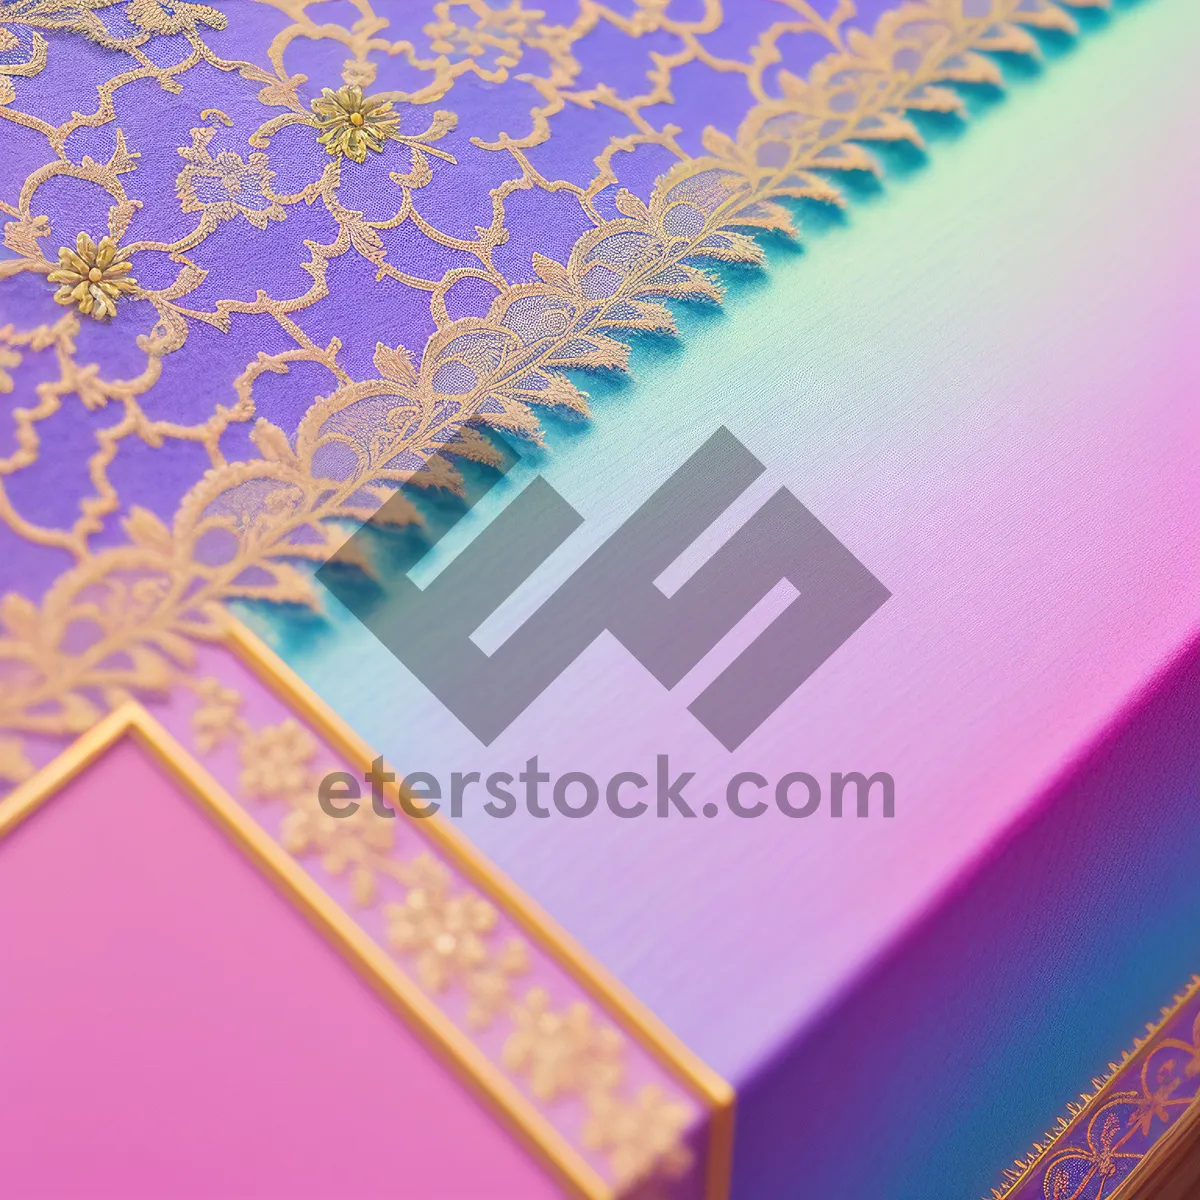 Picture of Elegant Arabesque Envelope Design on Paper